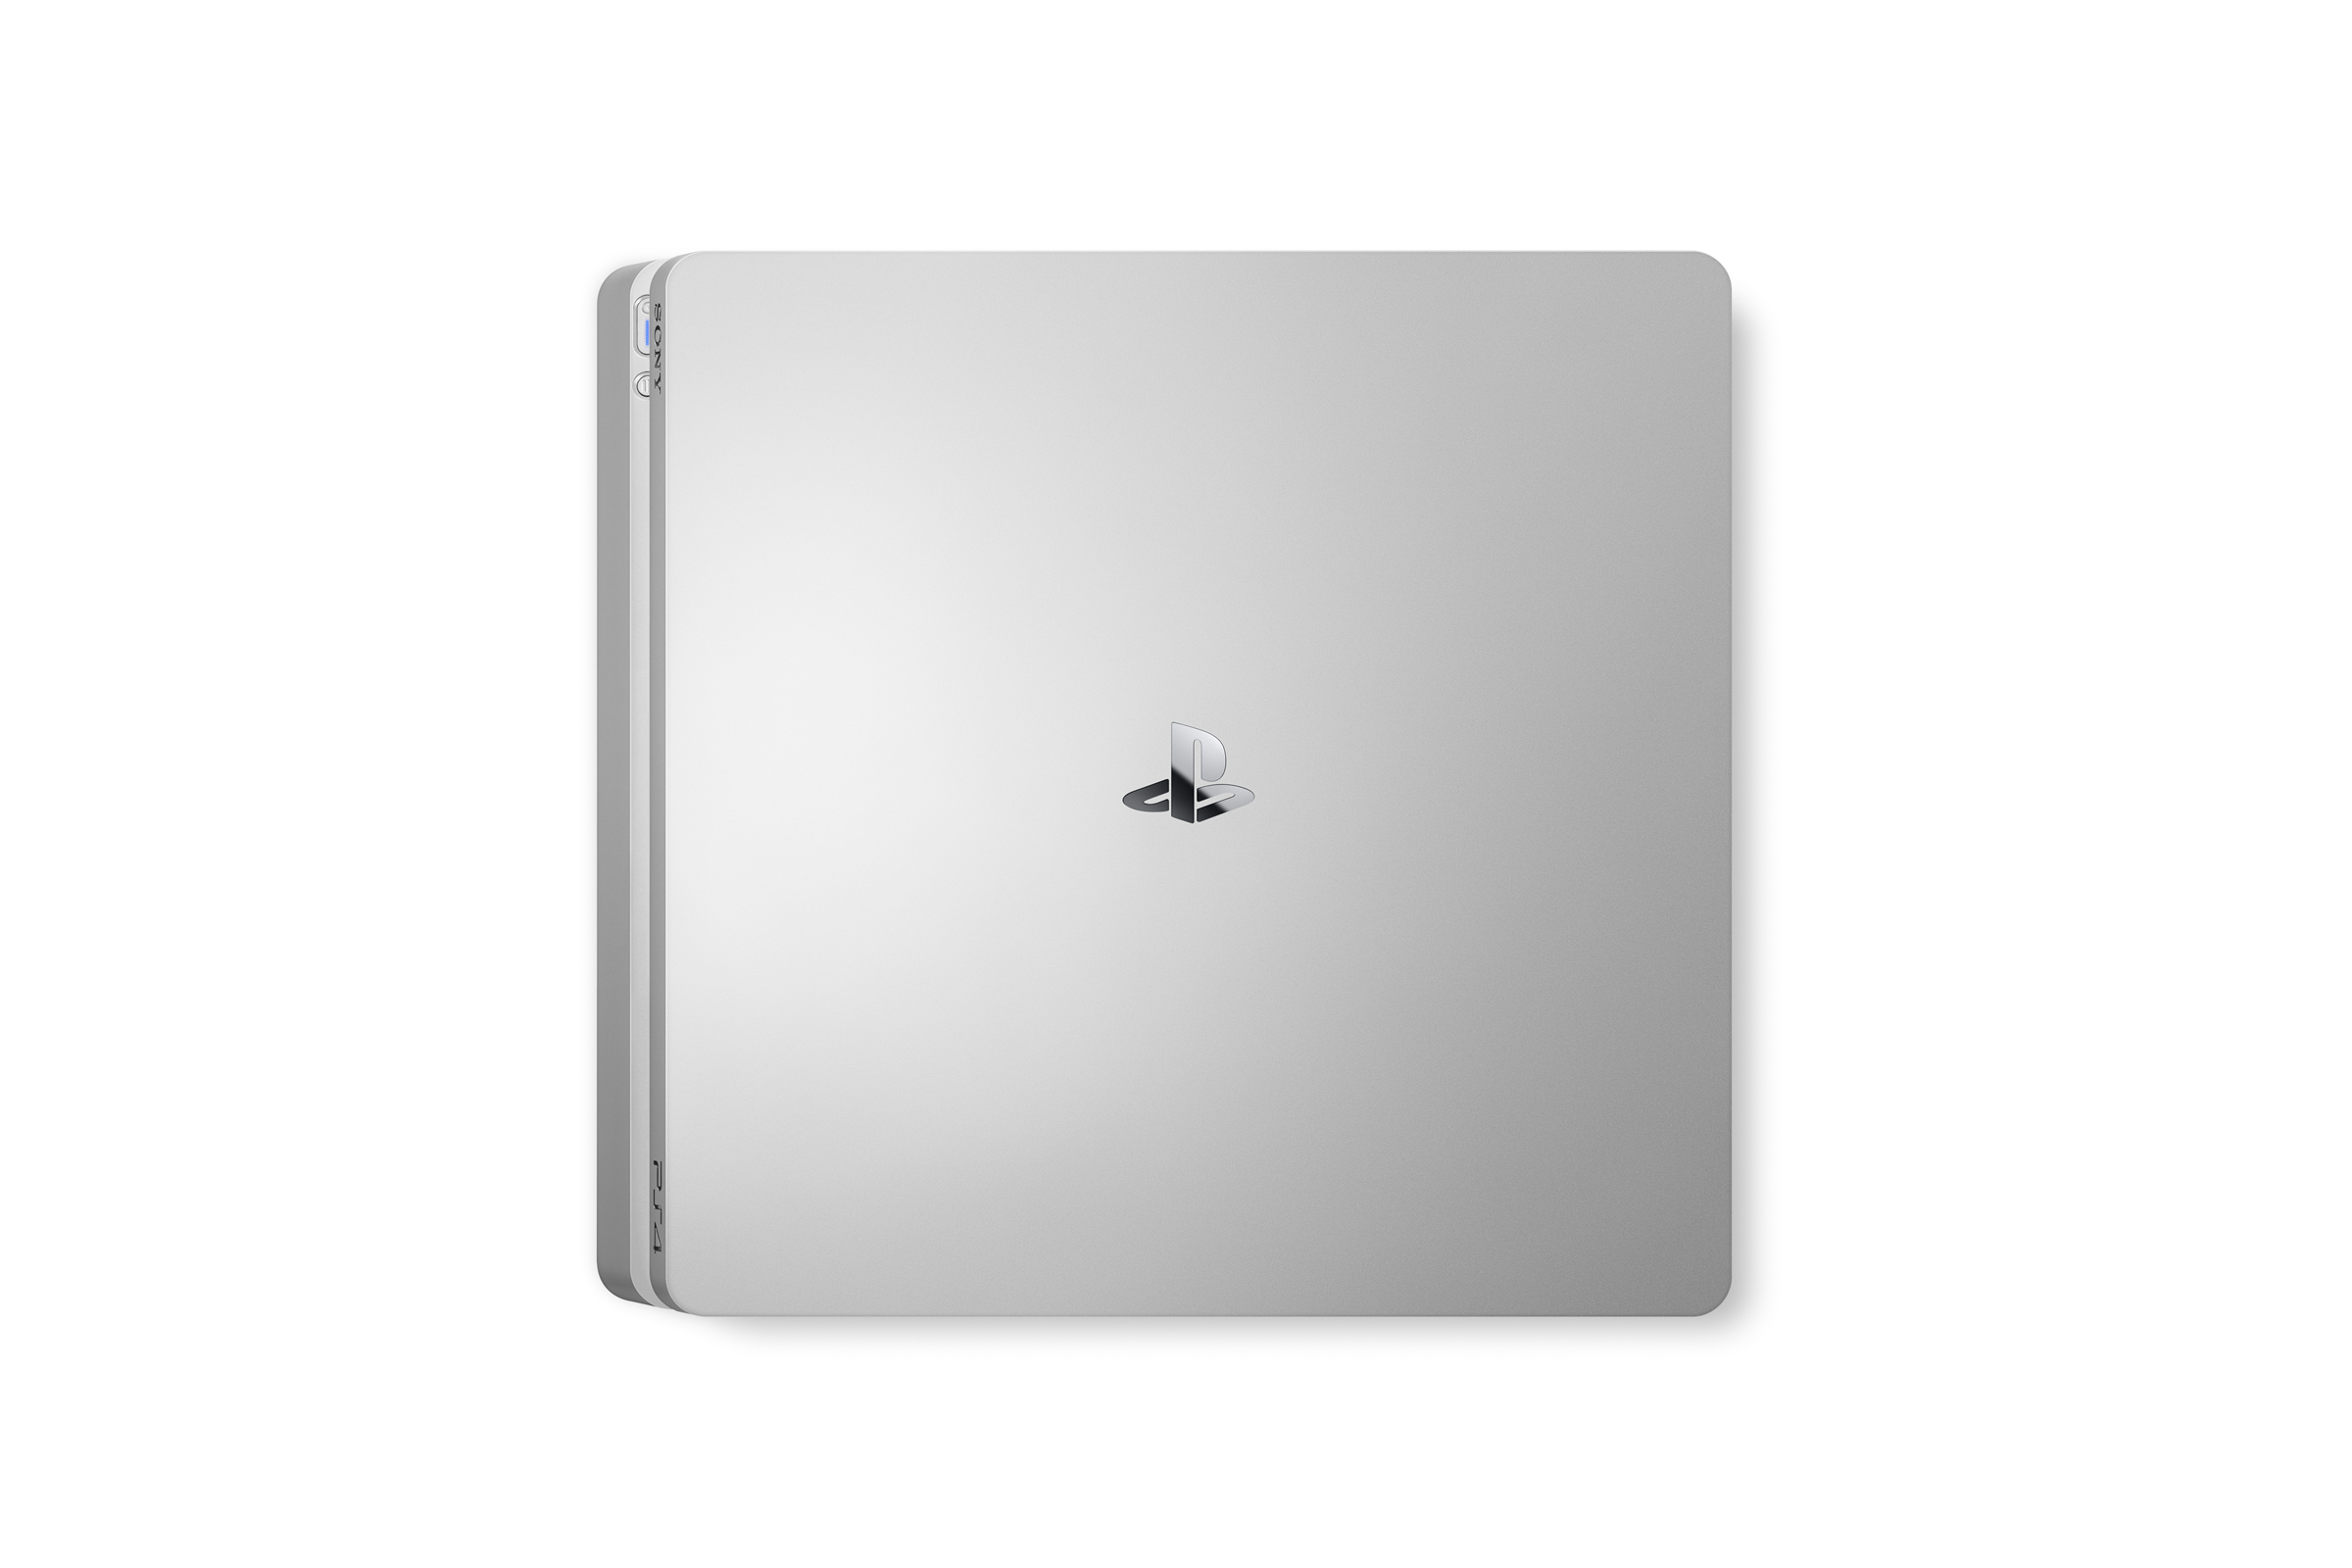 La Playstation 4 Slim Gold et Silver annoncée (22)